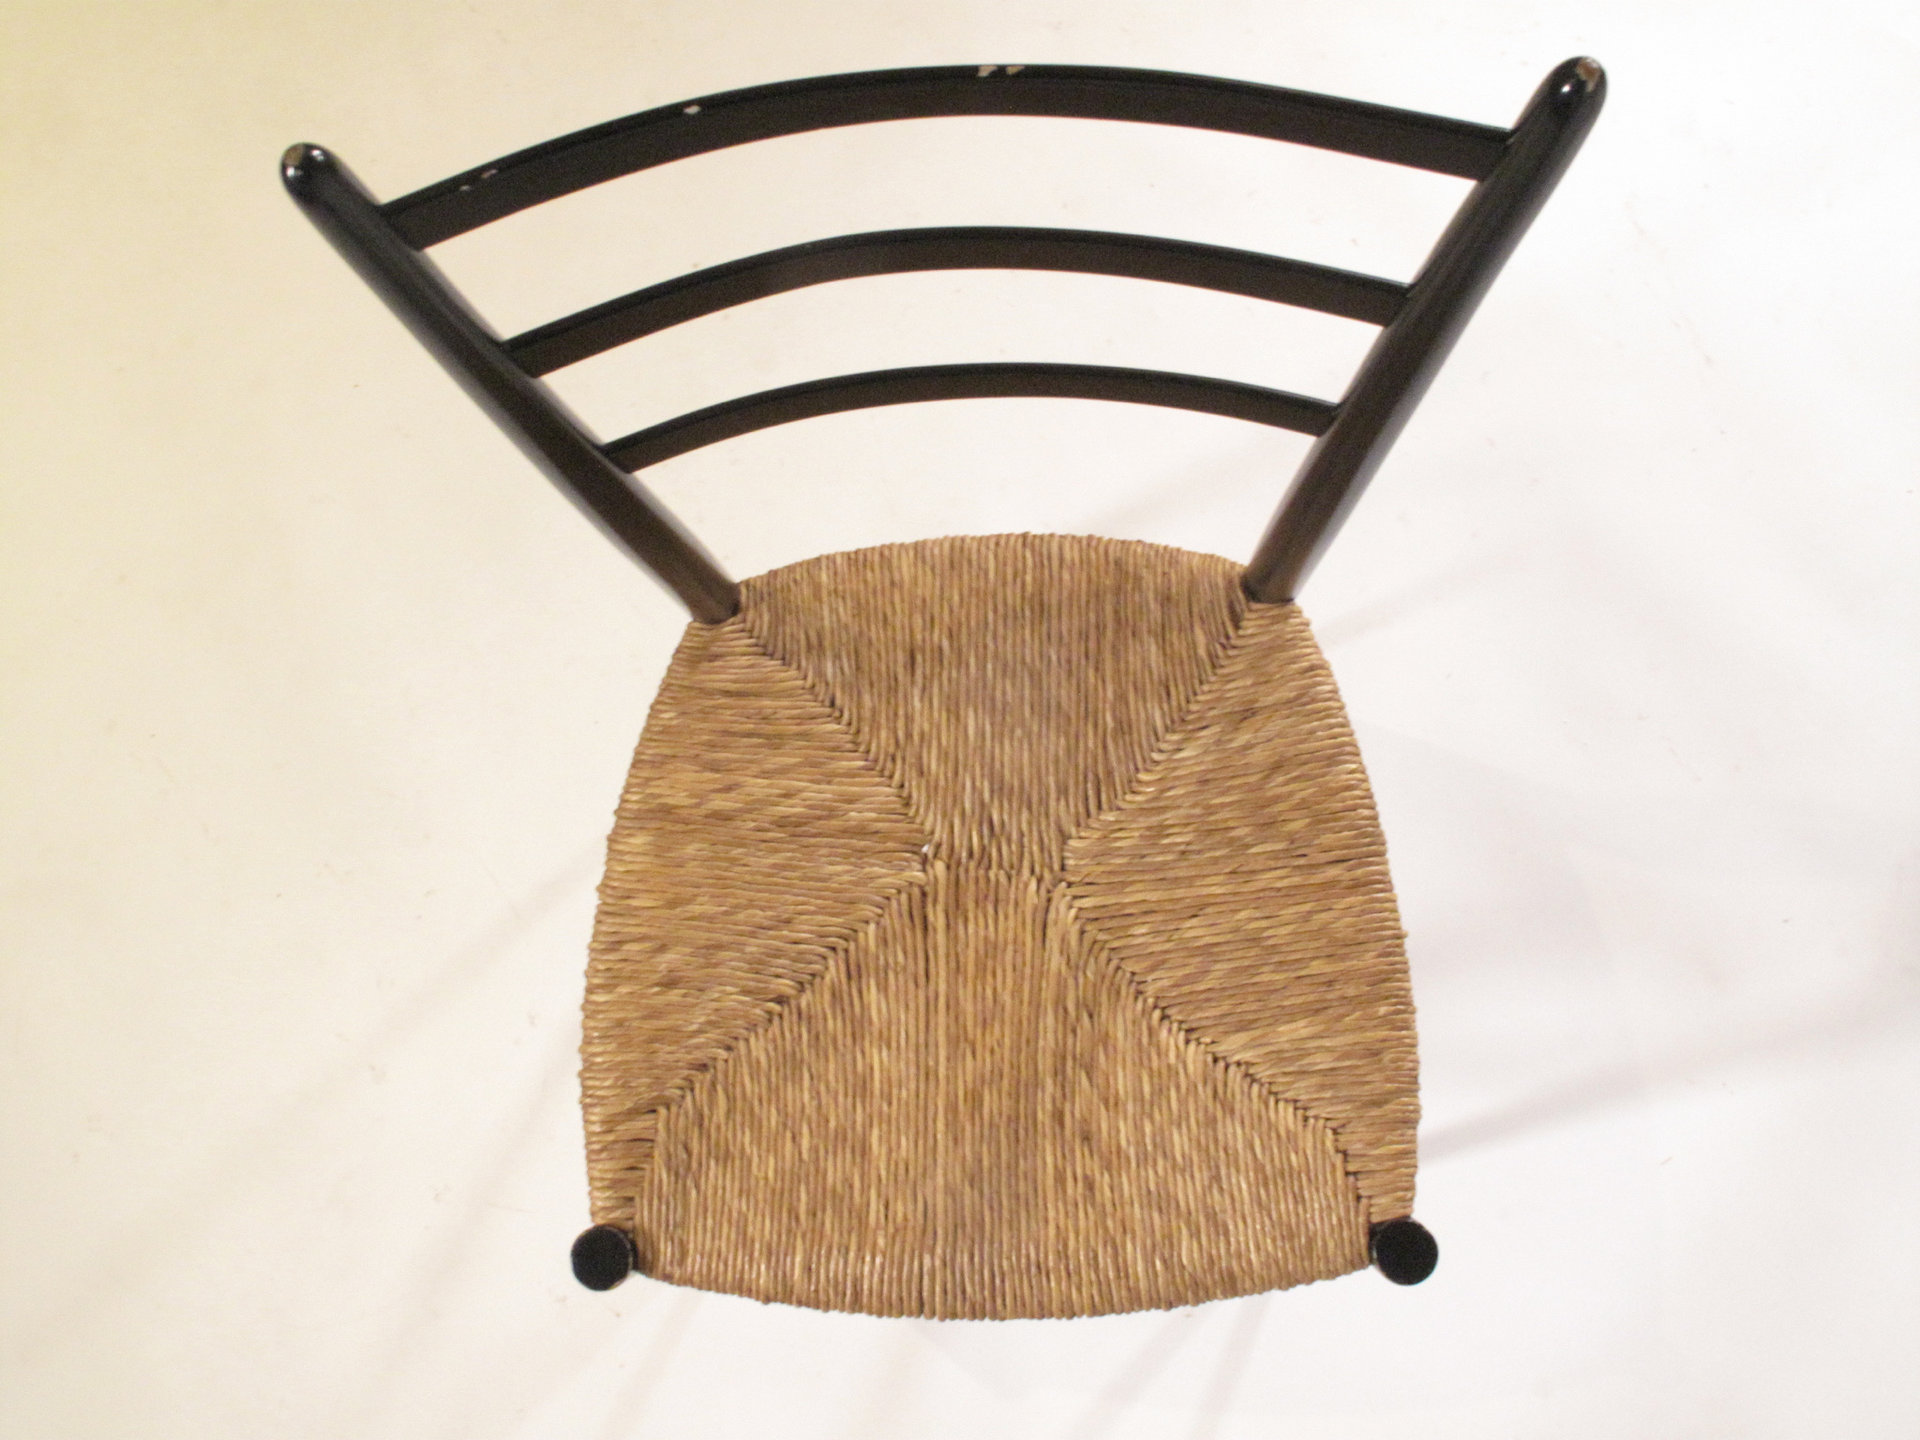 Série de 4 chaises Spinetto par Chiavari